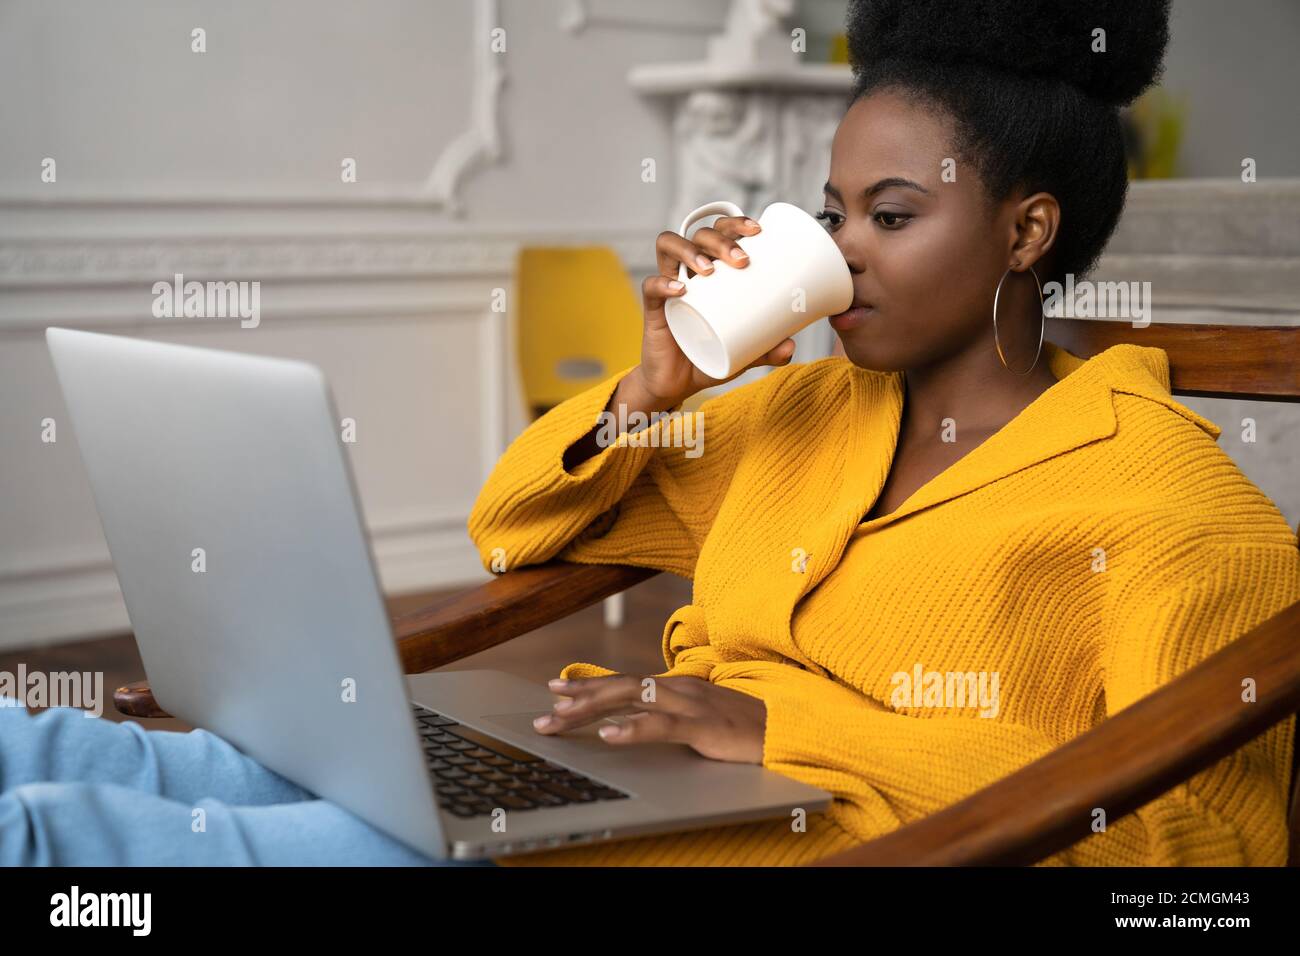 Femme biraciale afro-américaine avec une coiffure afro-américaine dans un gilet jaune assis sur un fauteuil, étudiant à distance, travaillant en ligne sur un ordinateur portable, regardant des vidéos Banque D'Images